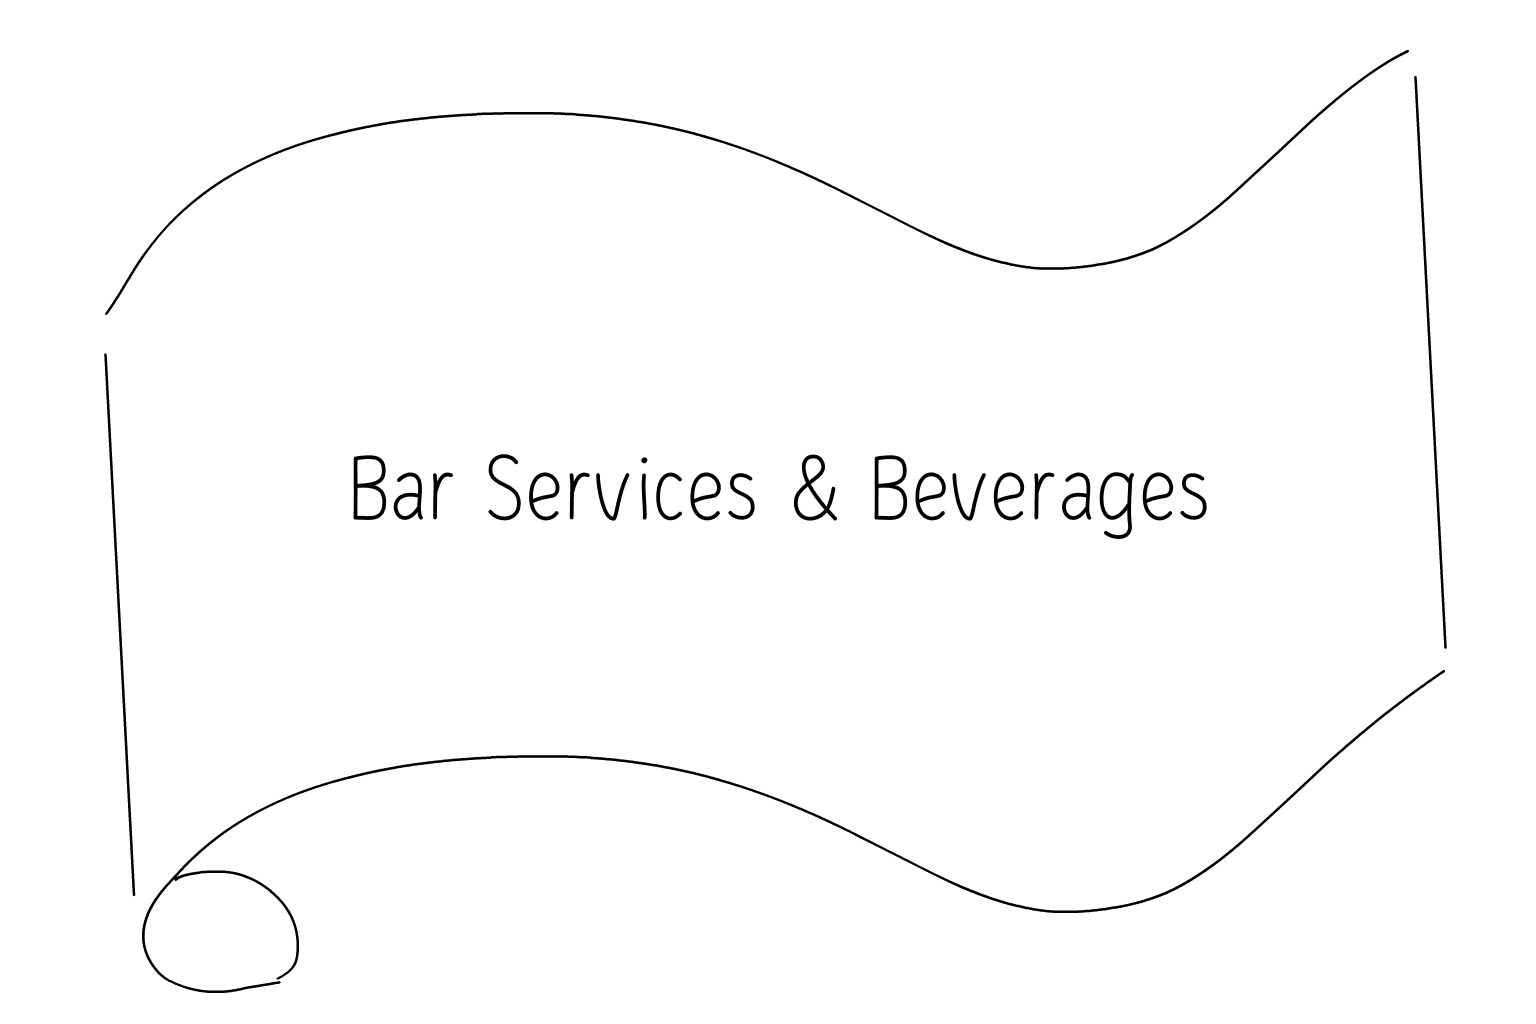 Illustration of Wedding Bar Services & Beverages